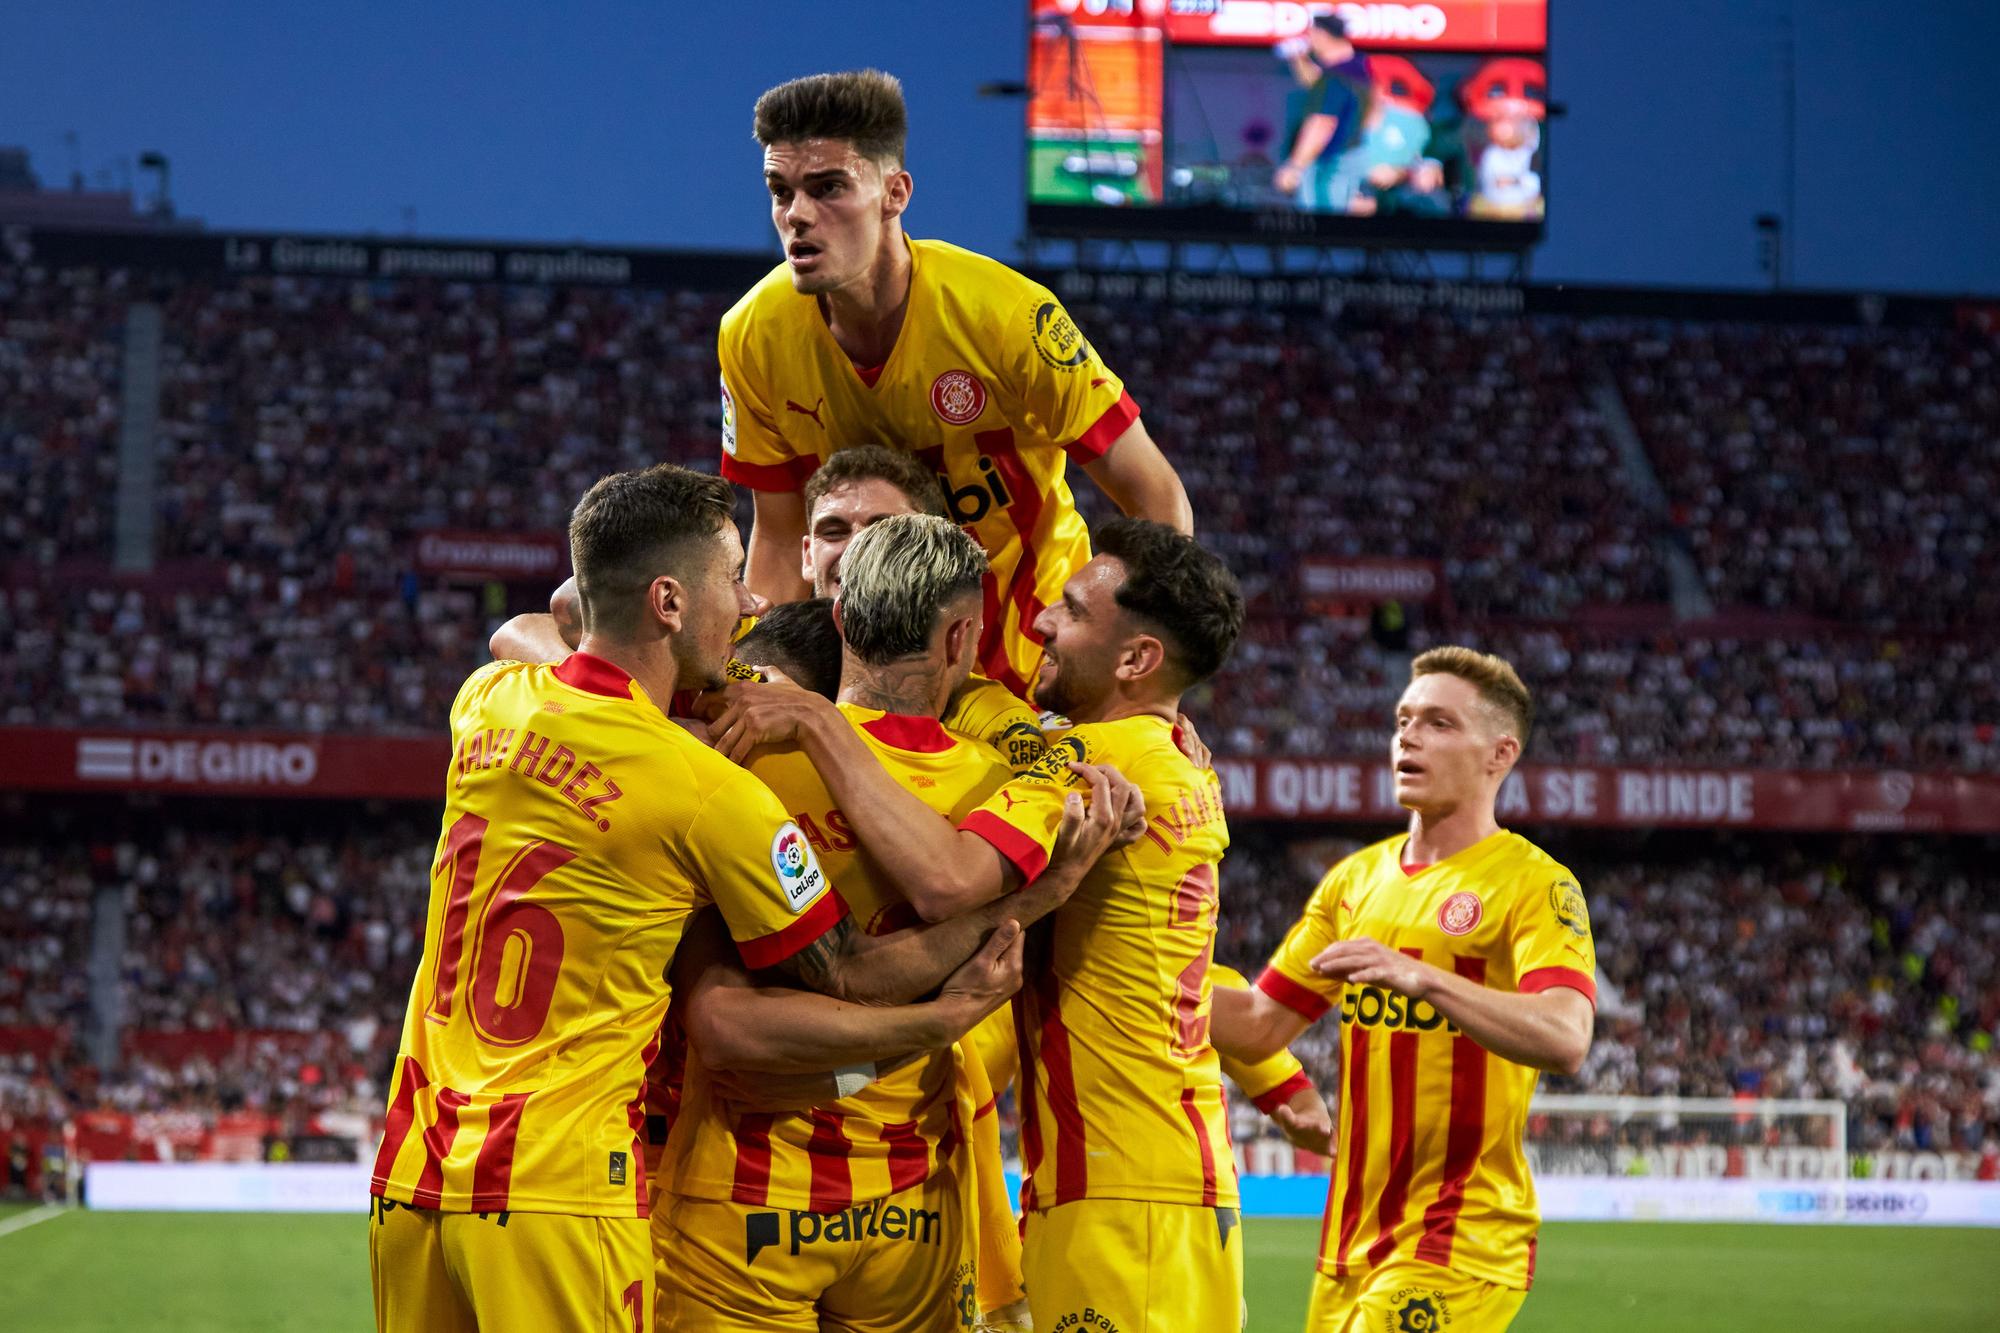 Les millors imatges de la victòria del Girona a Sevilla